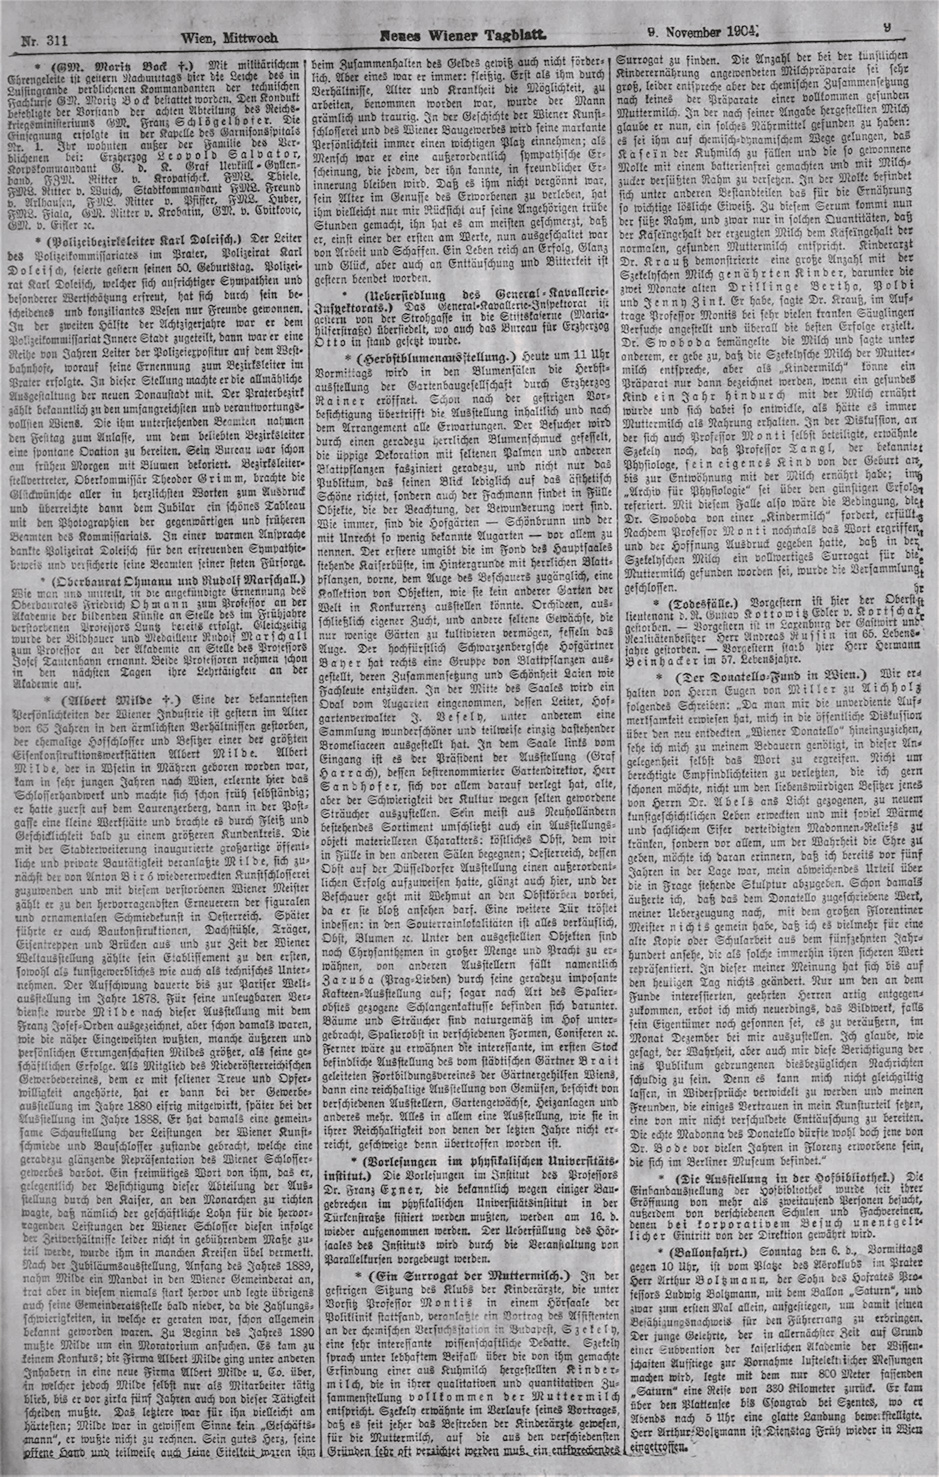 Quelle NWG: Neues Wiener Tagblatt vom 9.11.1904, S. 9